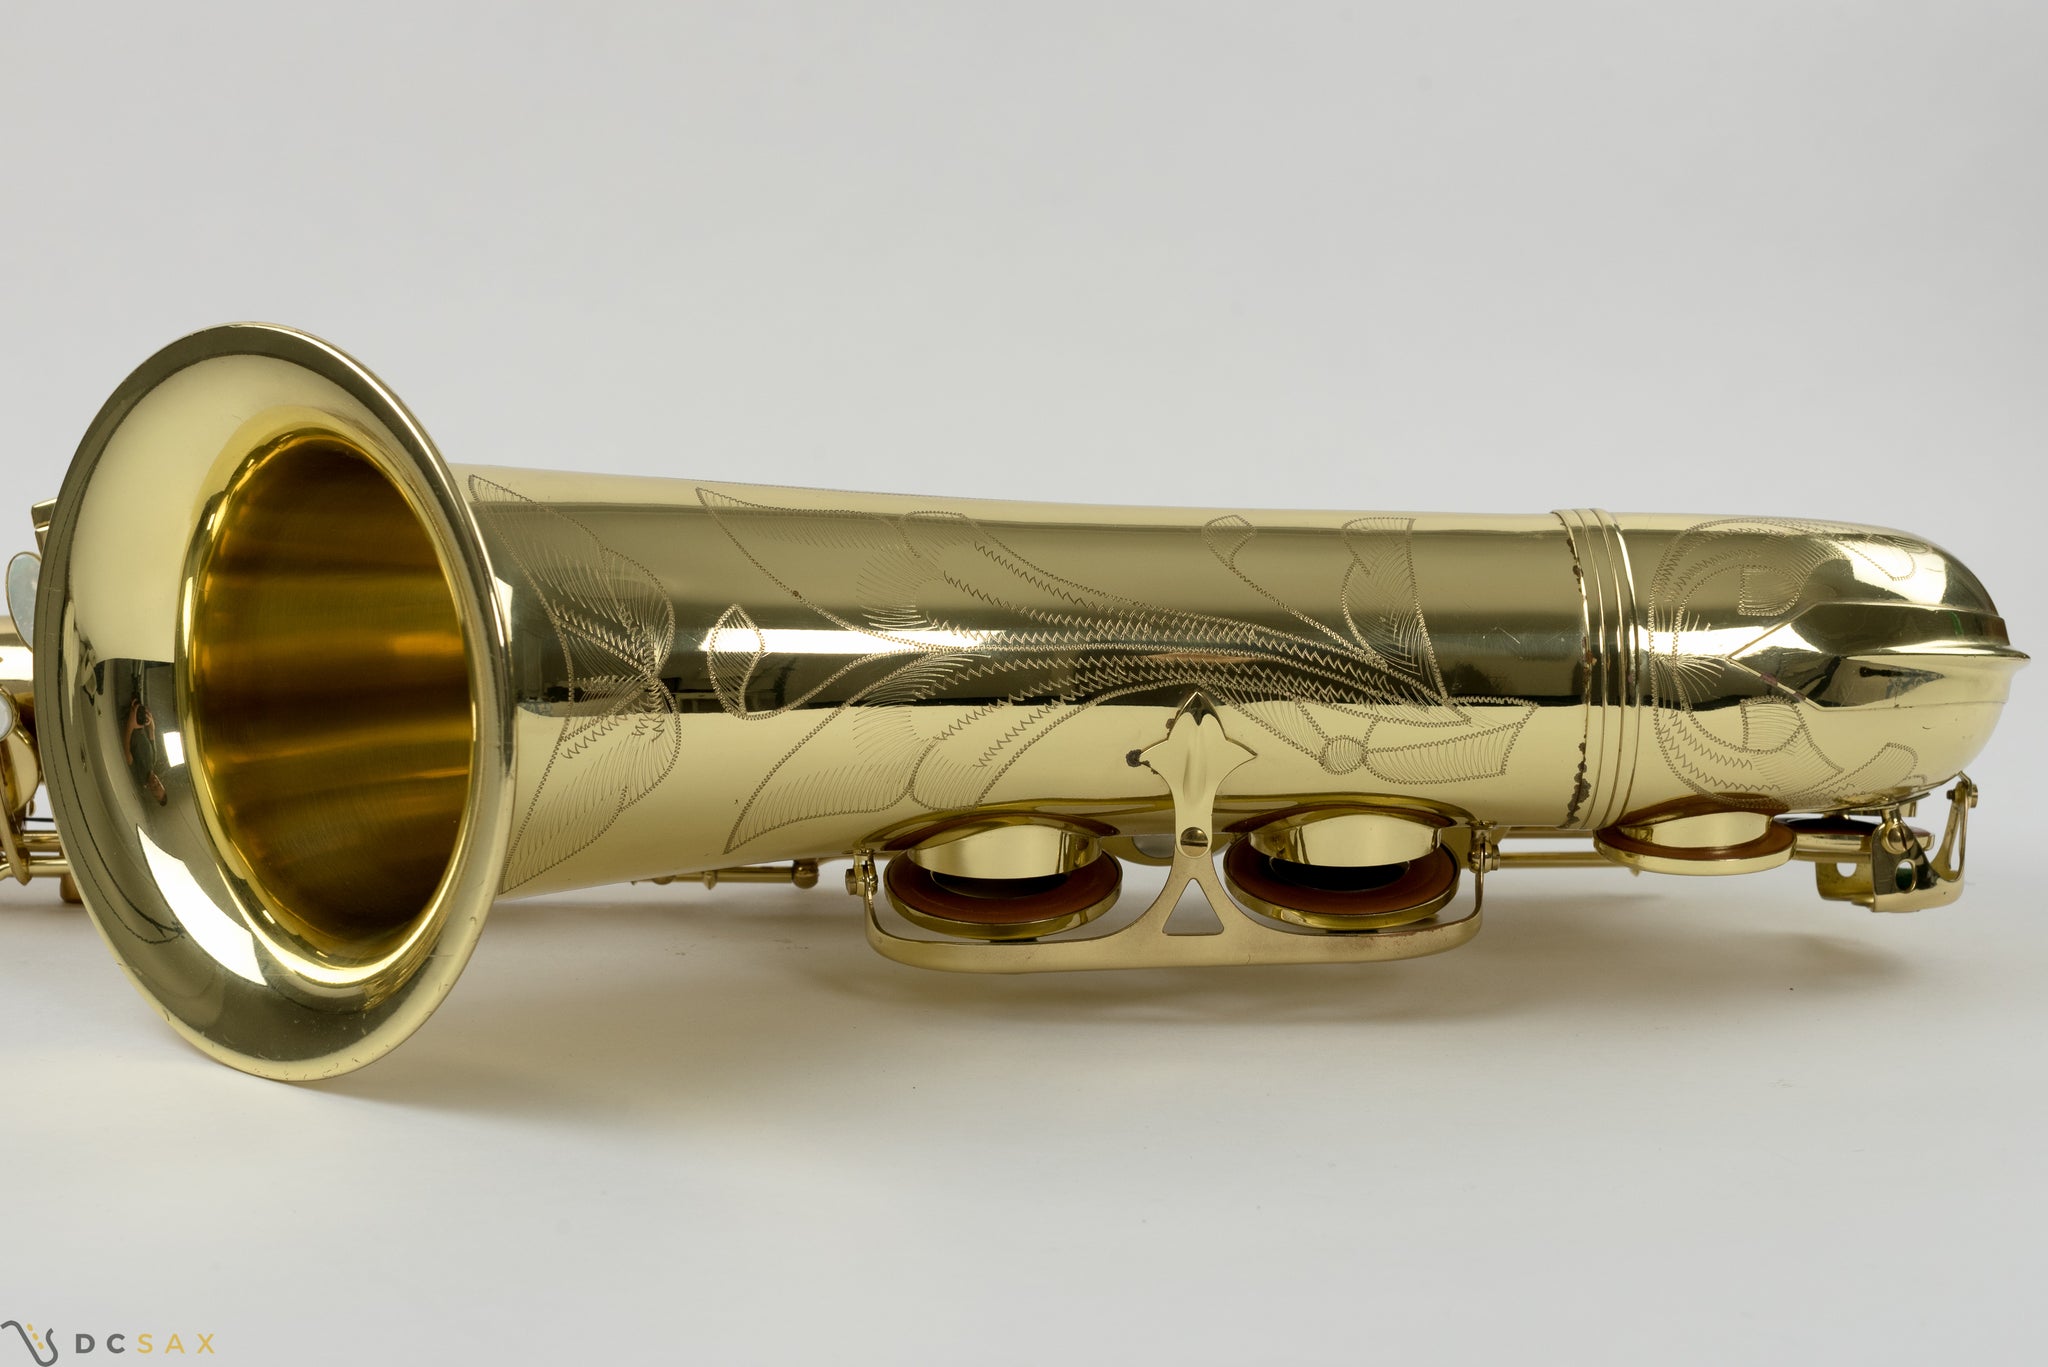 Selmer Series II Tenor Saxophone, Just Serviced, Video, Near Mint